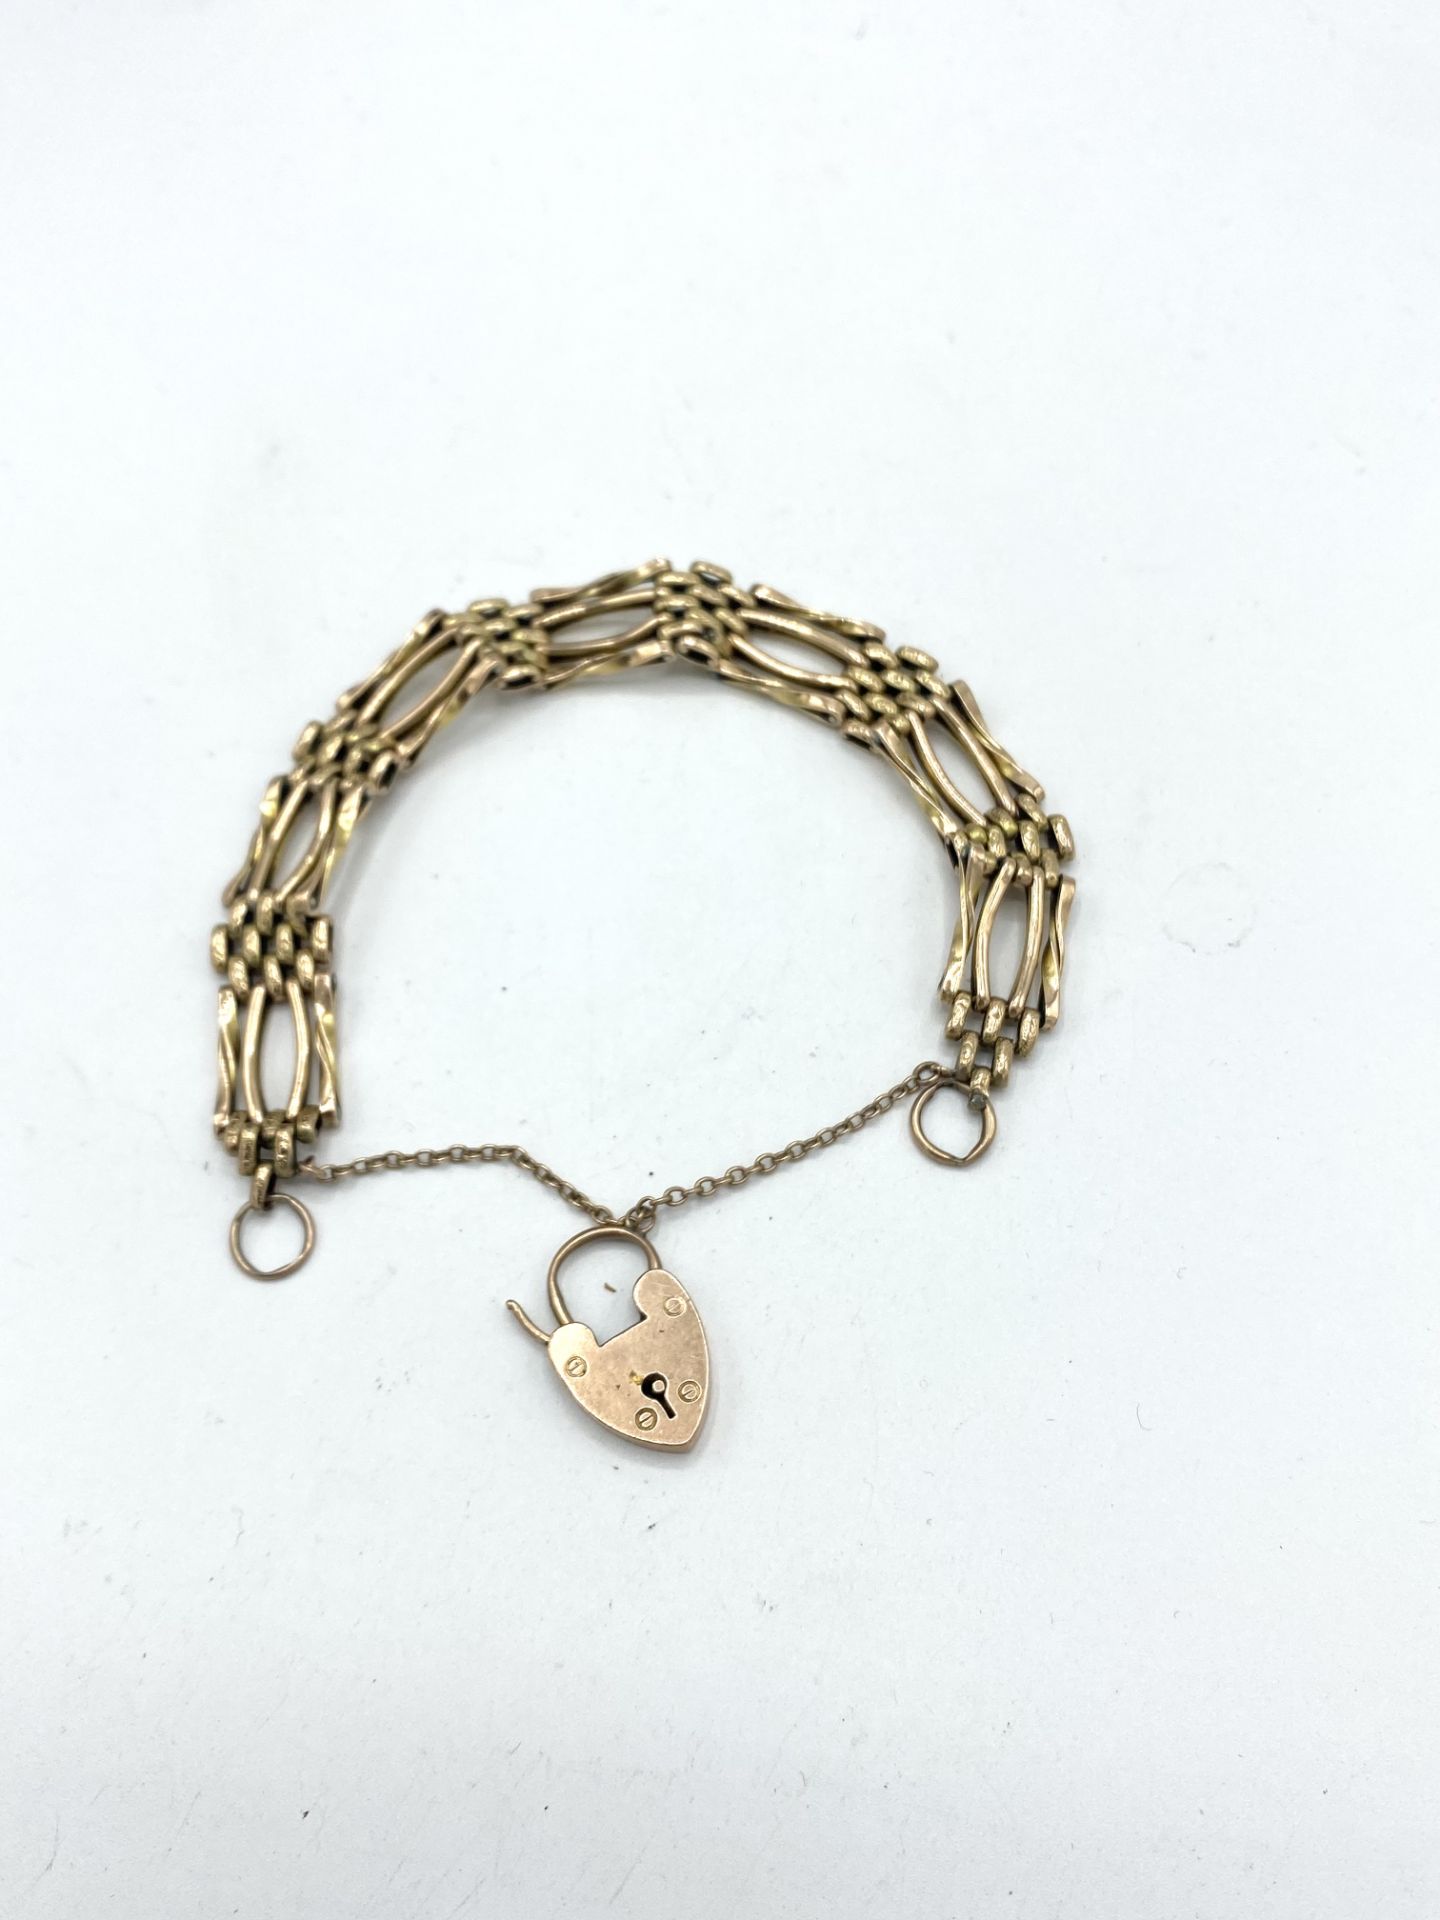 9ct gold gate bracelet - Image 3 of 3